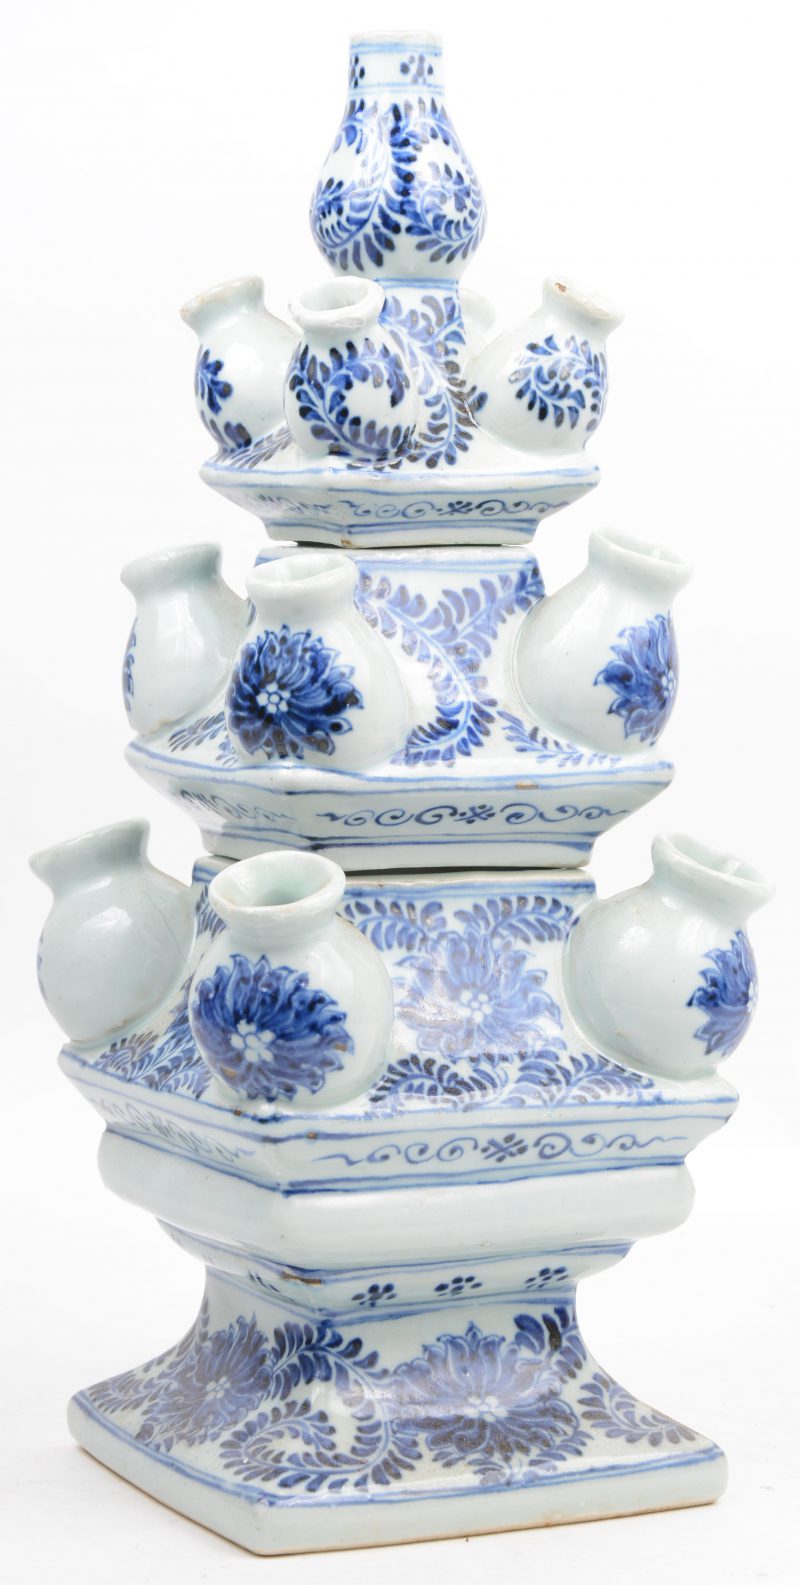 Een uit drie delen opgebouwde tulpenvaas van Chinees porselein, versierd met blauw op wit floraal decor.